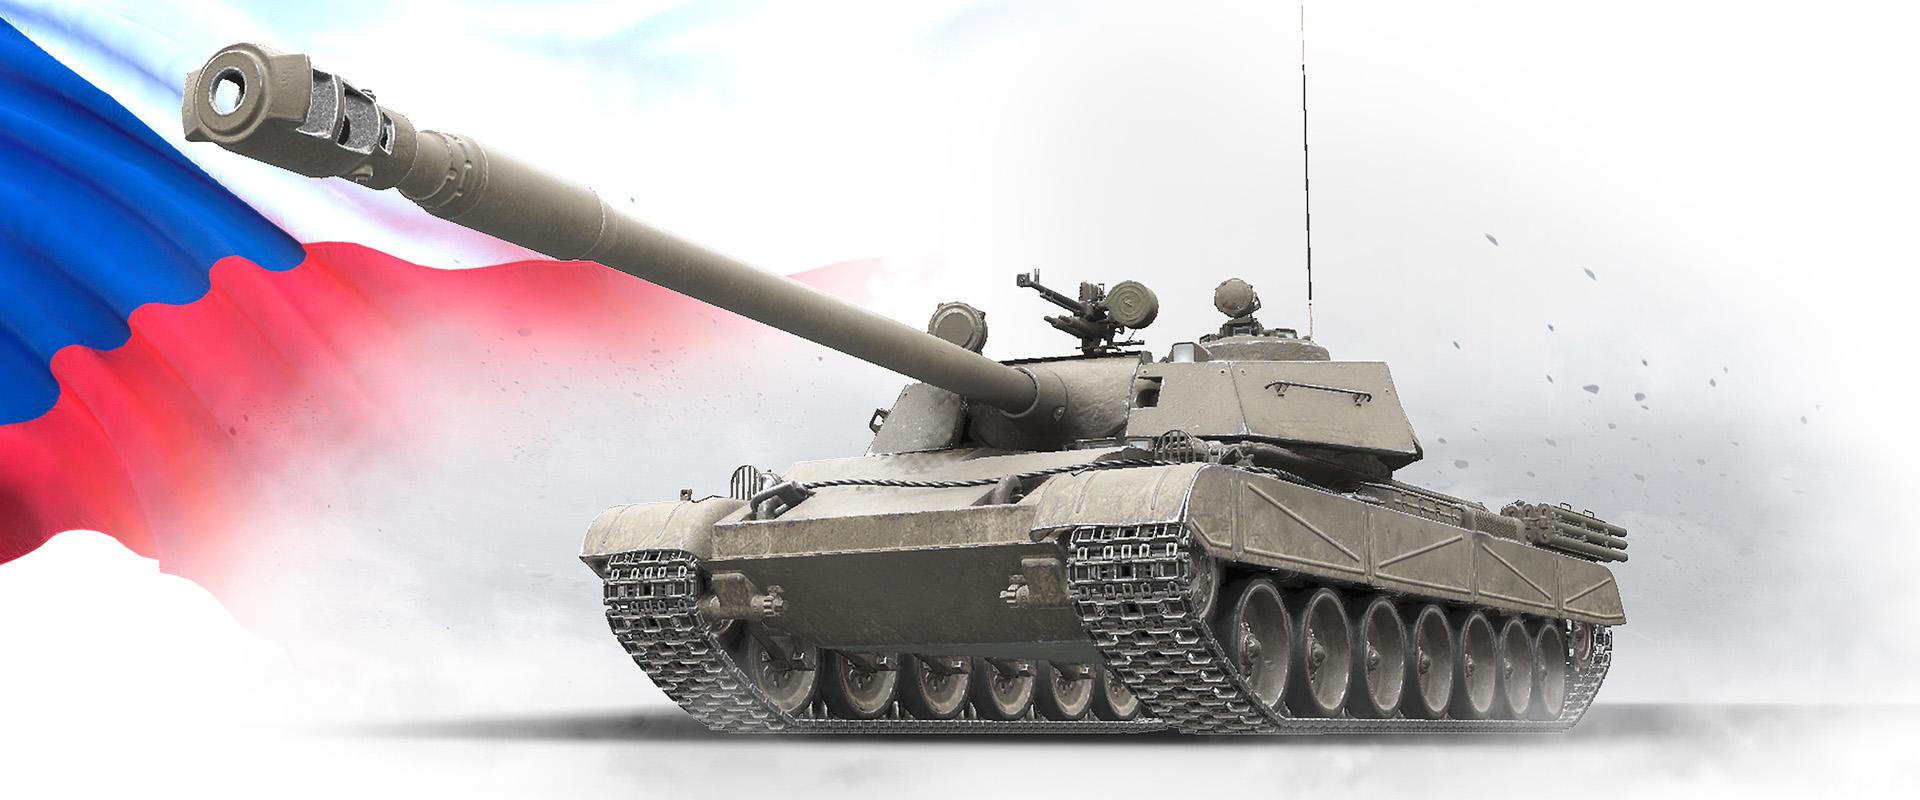 Egy igazán különleges csehszlovák tank: TT-130M betekintés